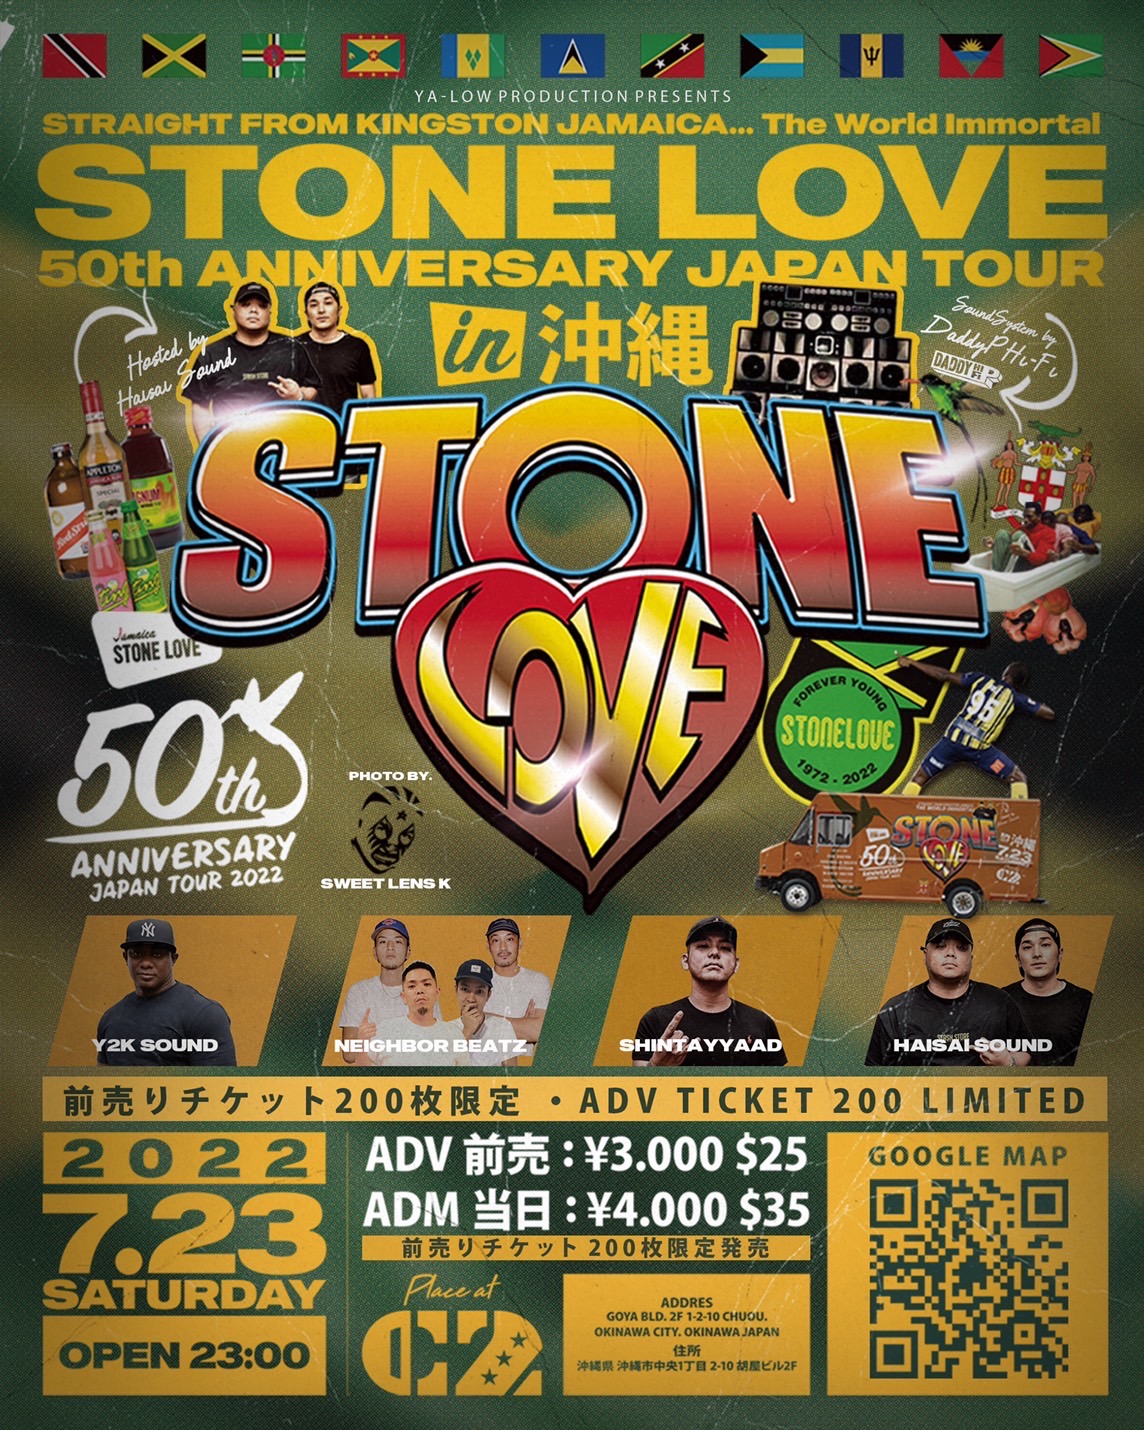 Stone Love Weddy Weddy Wednesday!!!!!